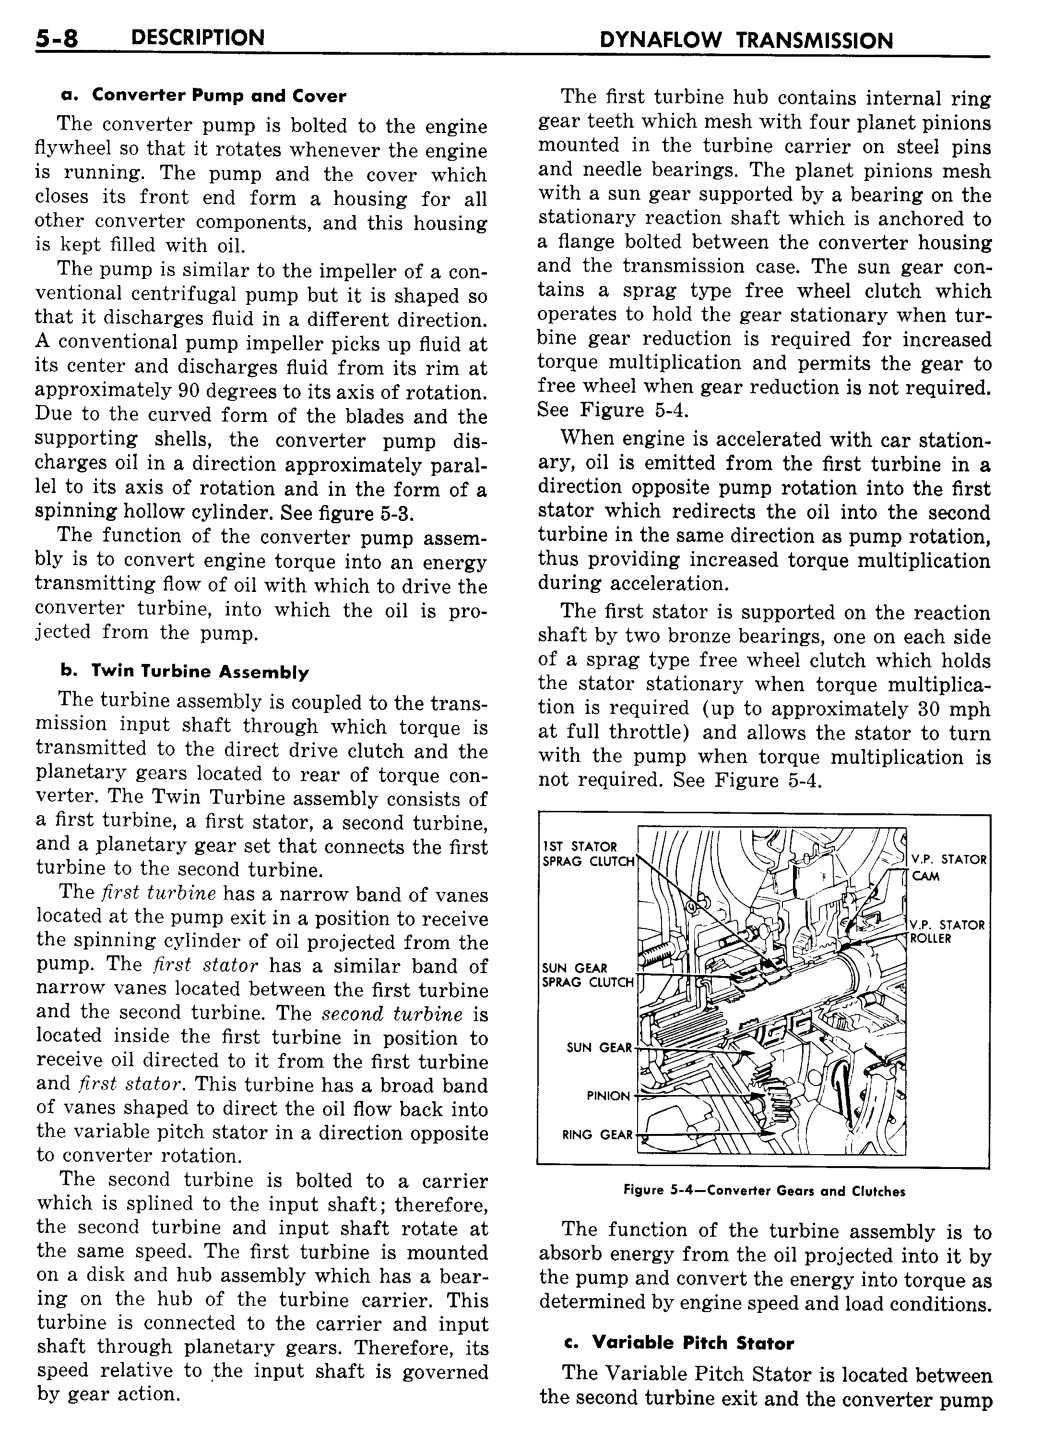 n_06 1957 Buick Shop Manual - Dynaflow-008-008.jpg